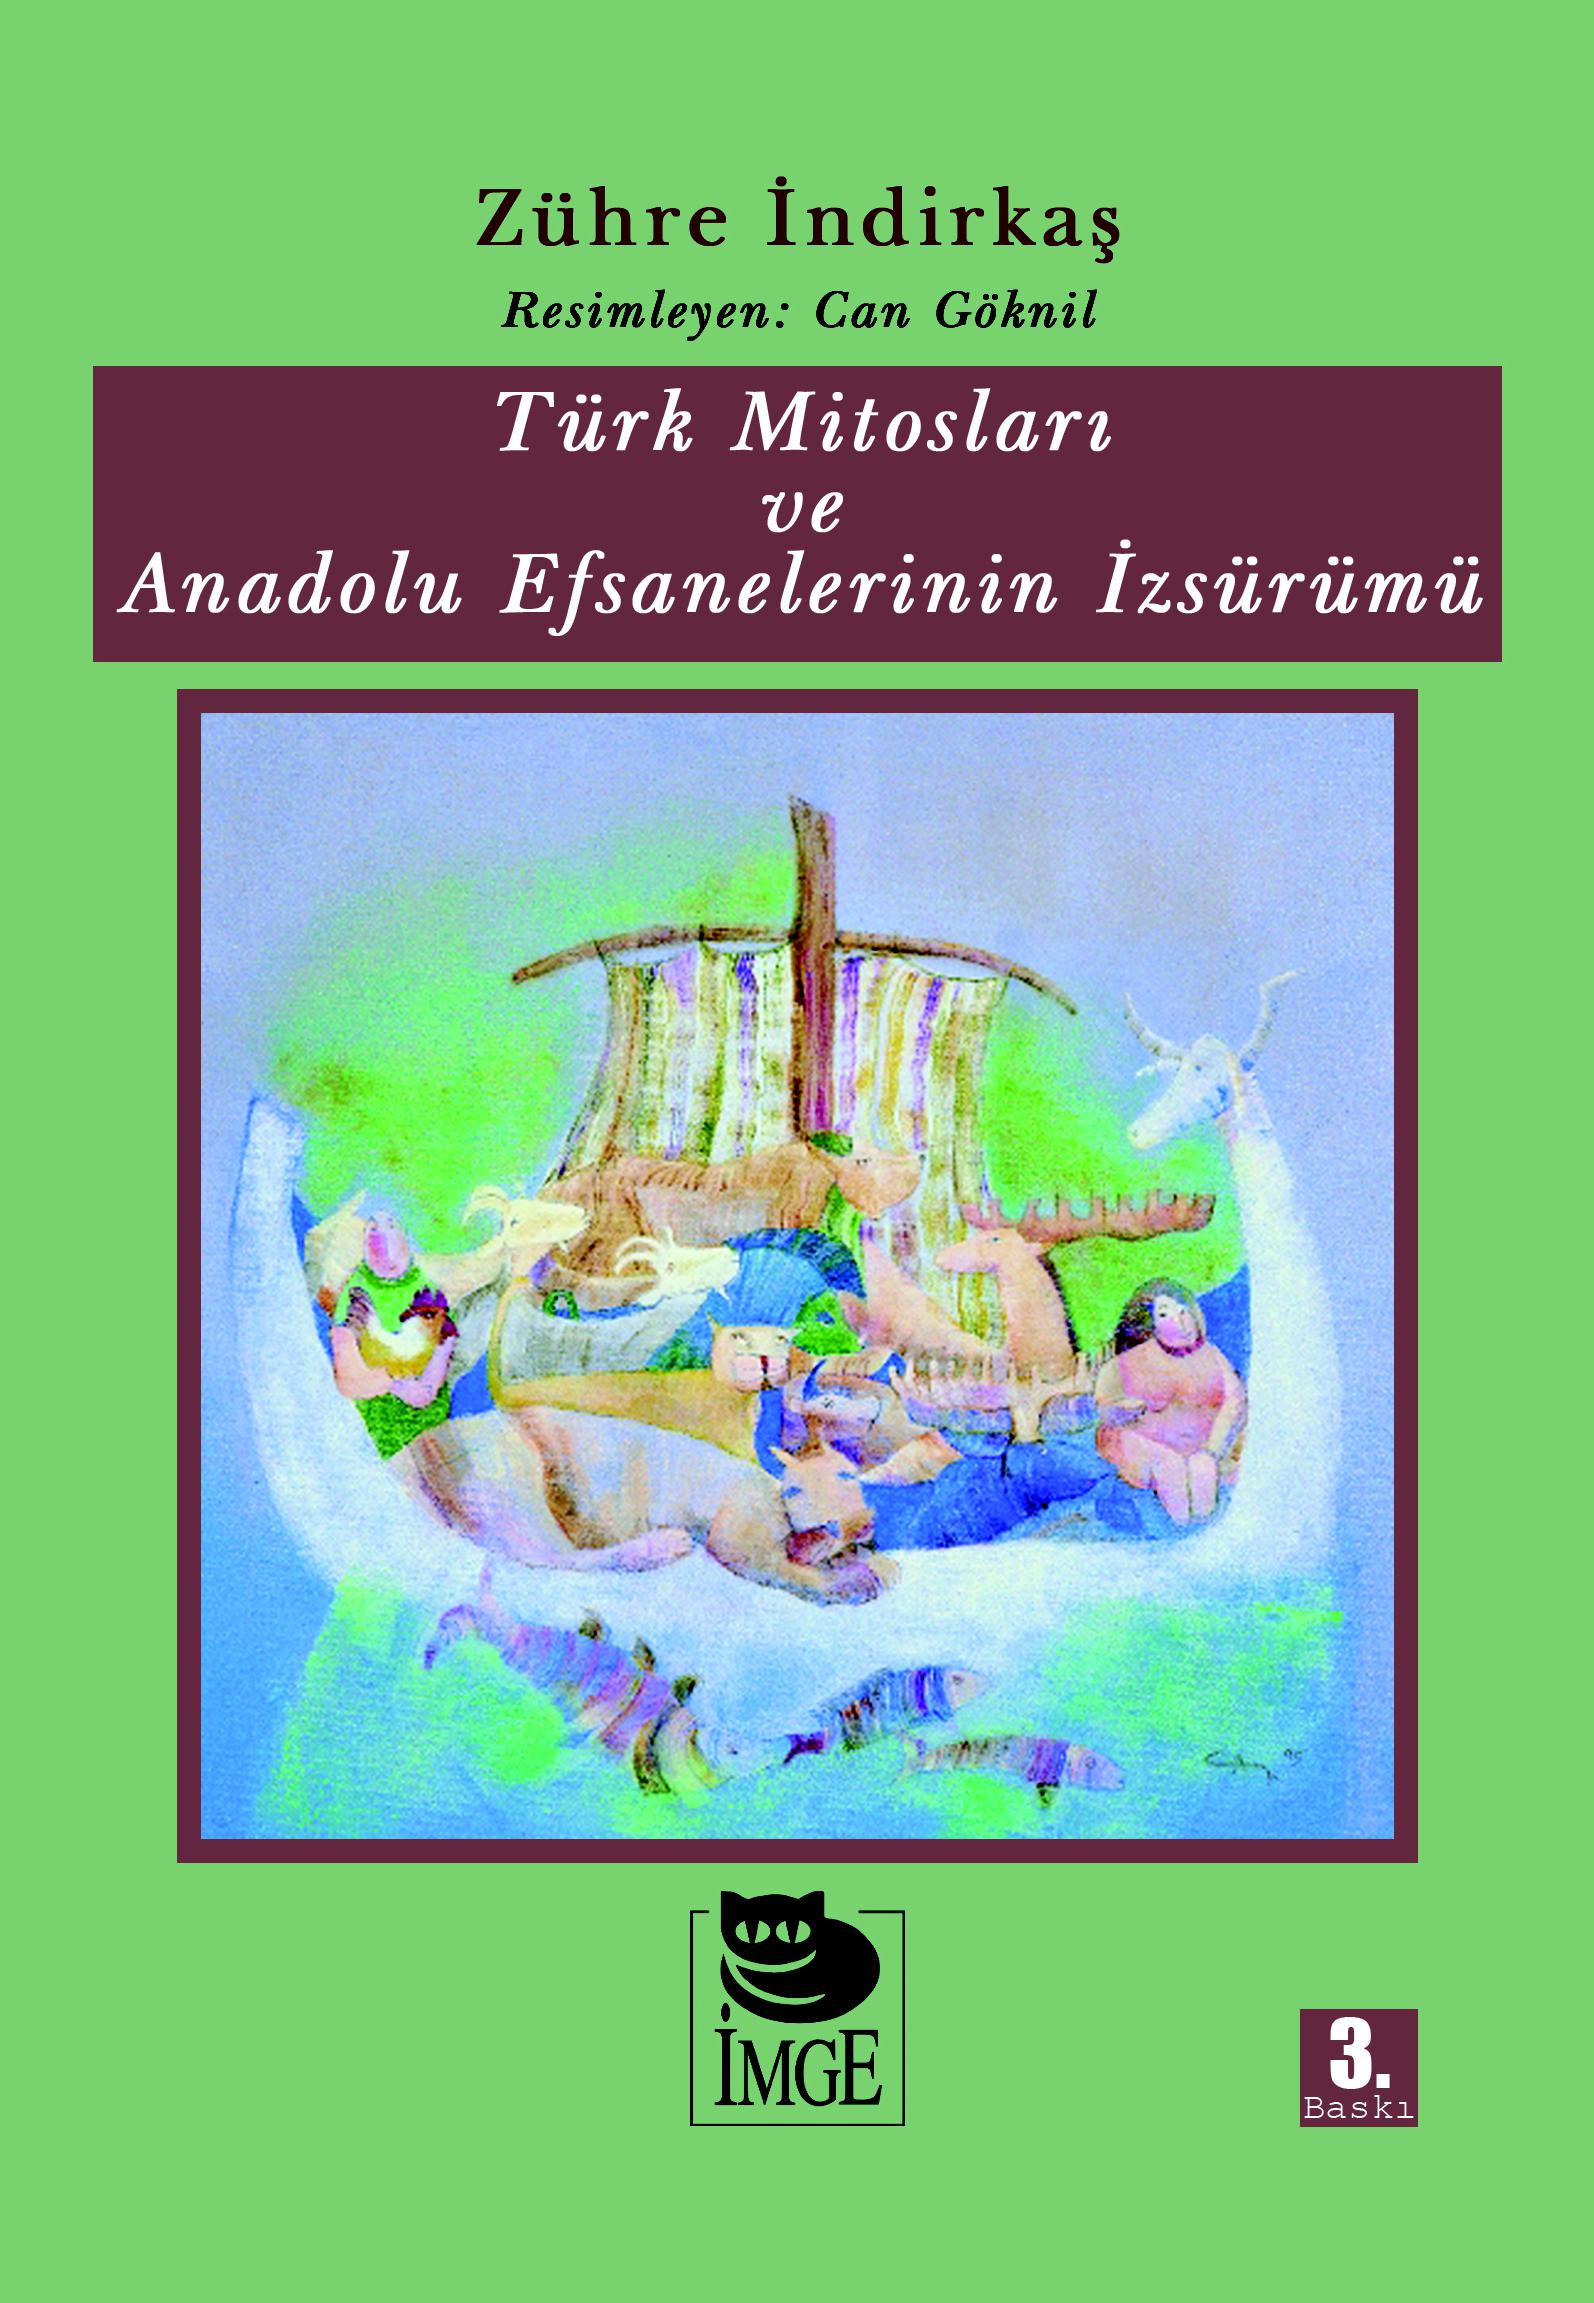 Türk Mitosları ve Anadolu Efsanelerinin İzsürümü